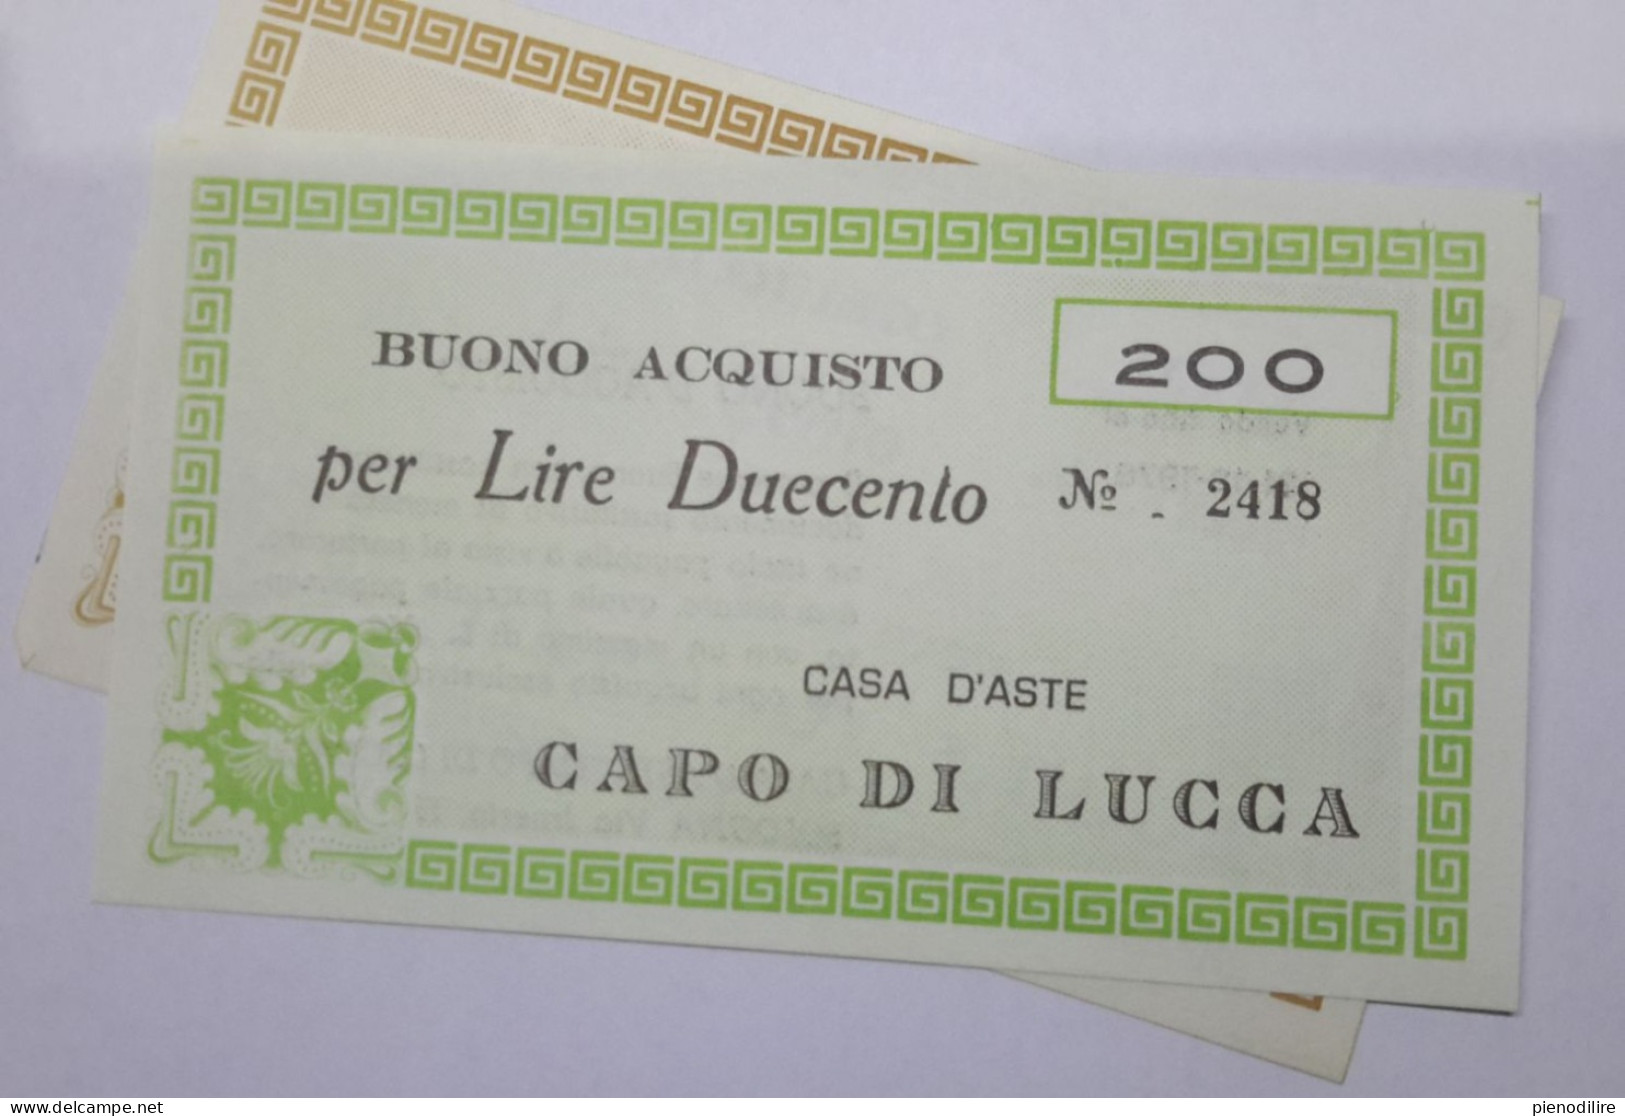 LOTTO 5Pz. 100 200 300 400 LIRE BUONI ACQUISTO CASA D'ASTE CAPO DI LUCCA VALIDO FINO AL 31.12.1976 (A.1) - [10] Cheques En Mini-cheques